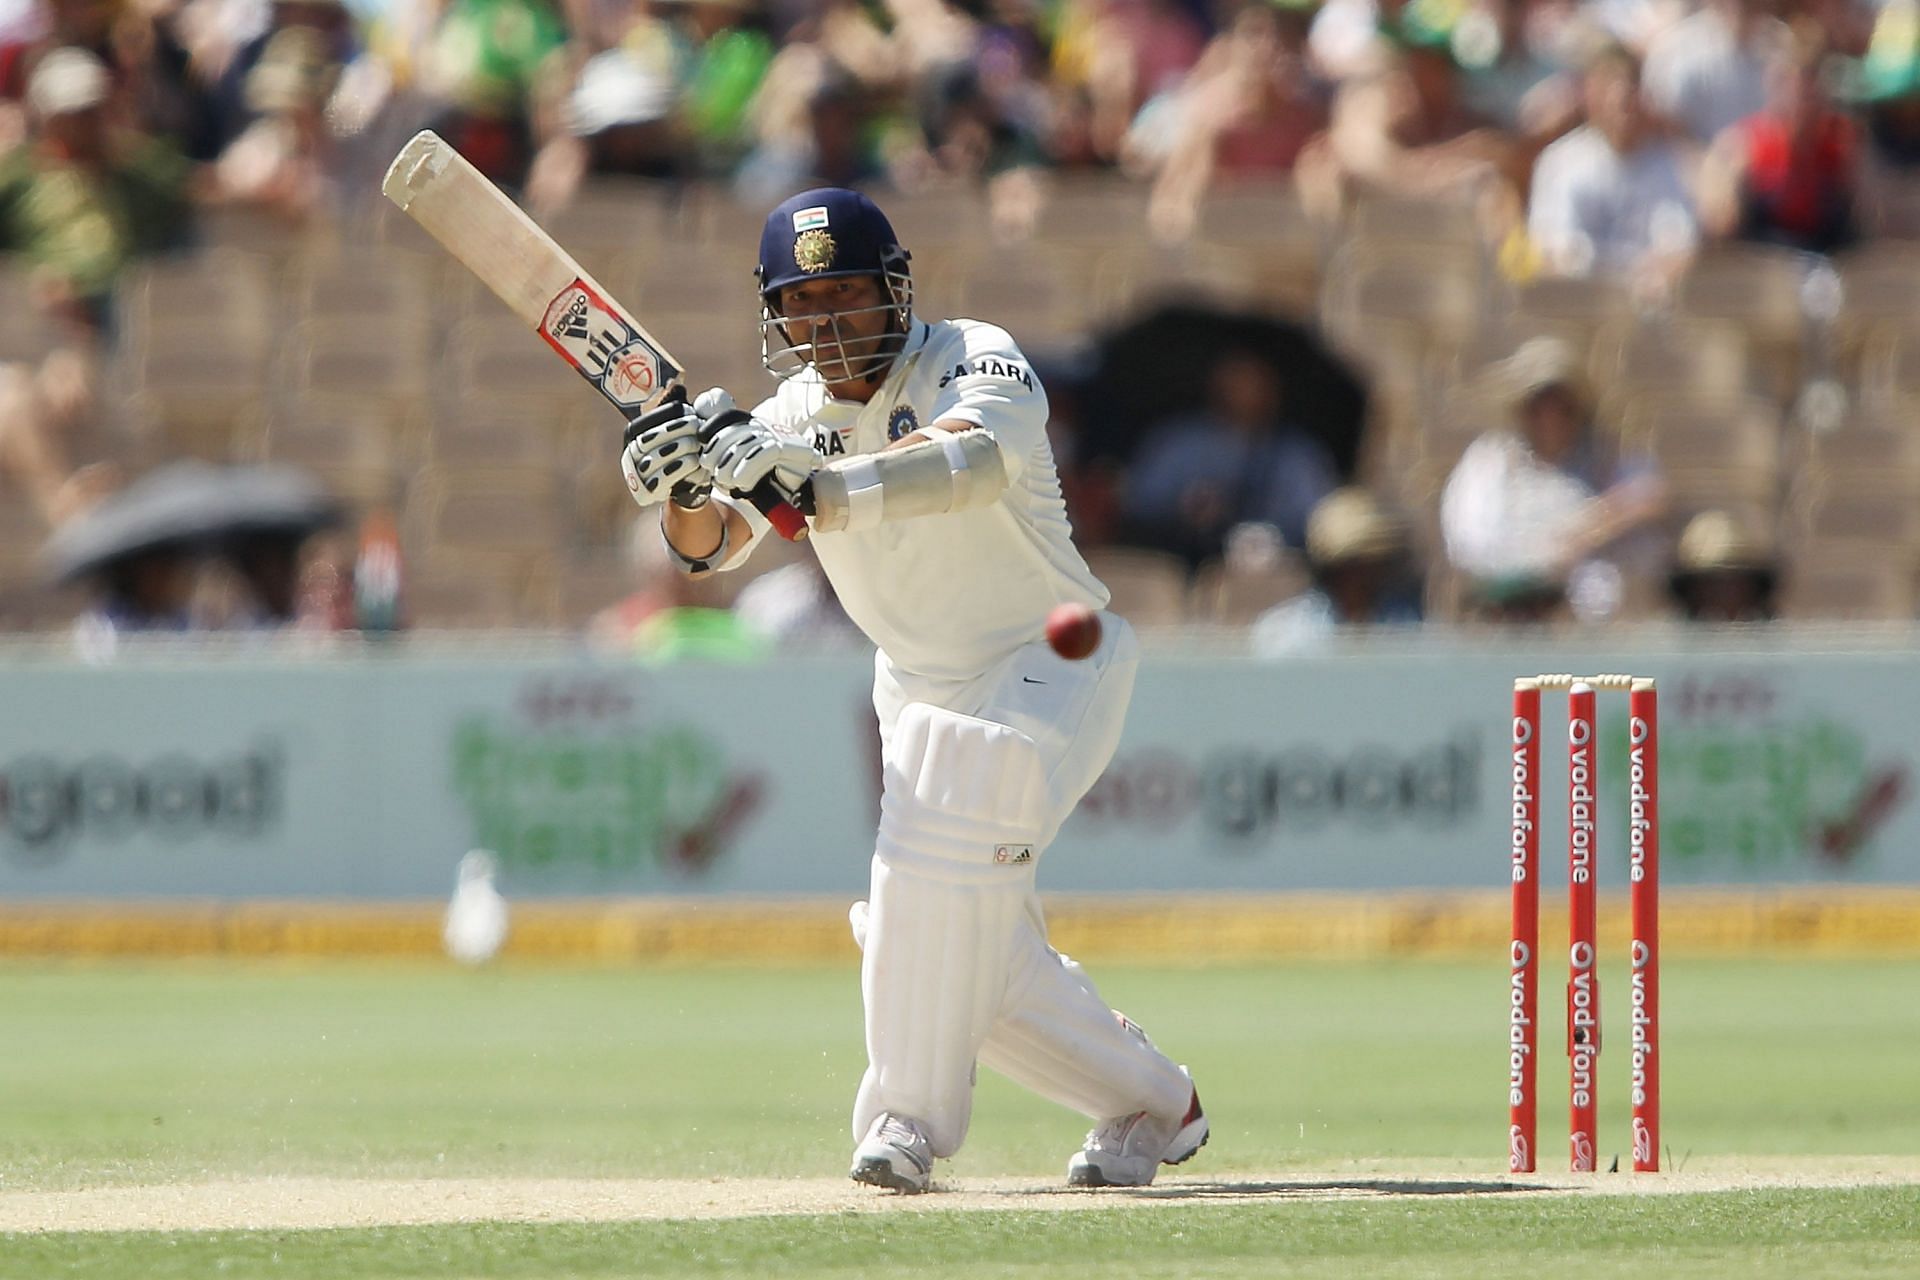 सचिन तेंदुलकर ने कई धाकड़ पारियां टेस्ट क्रिकेट में खेली हैक